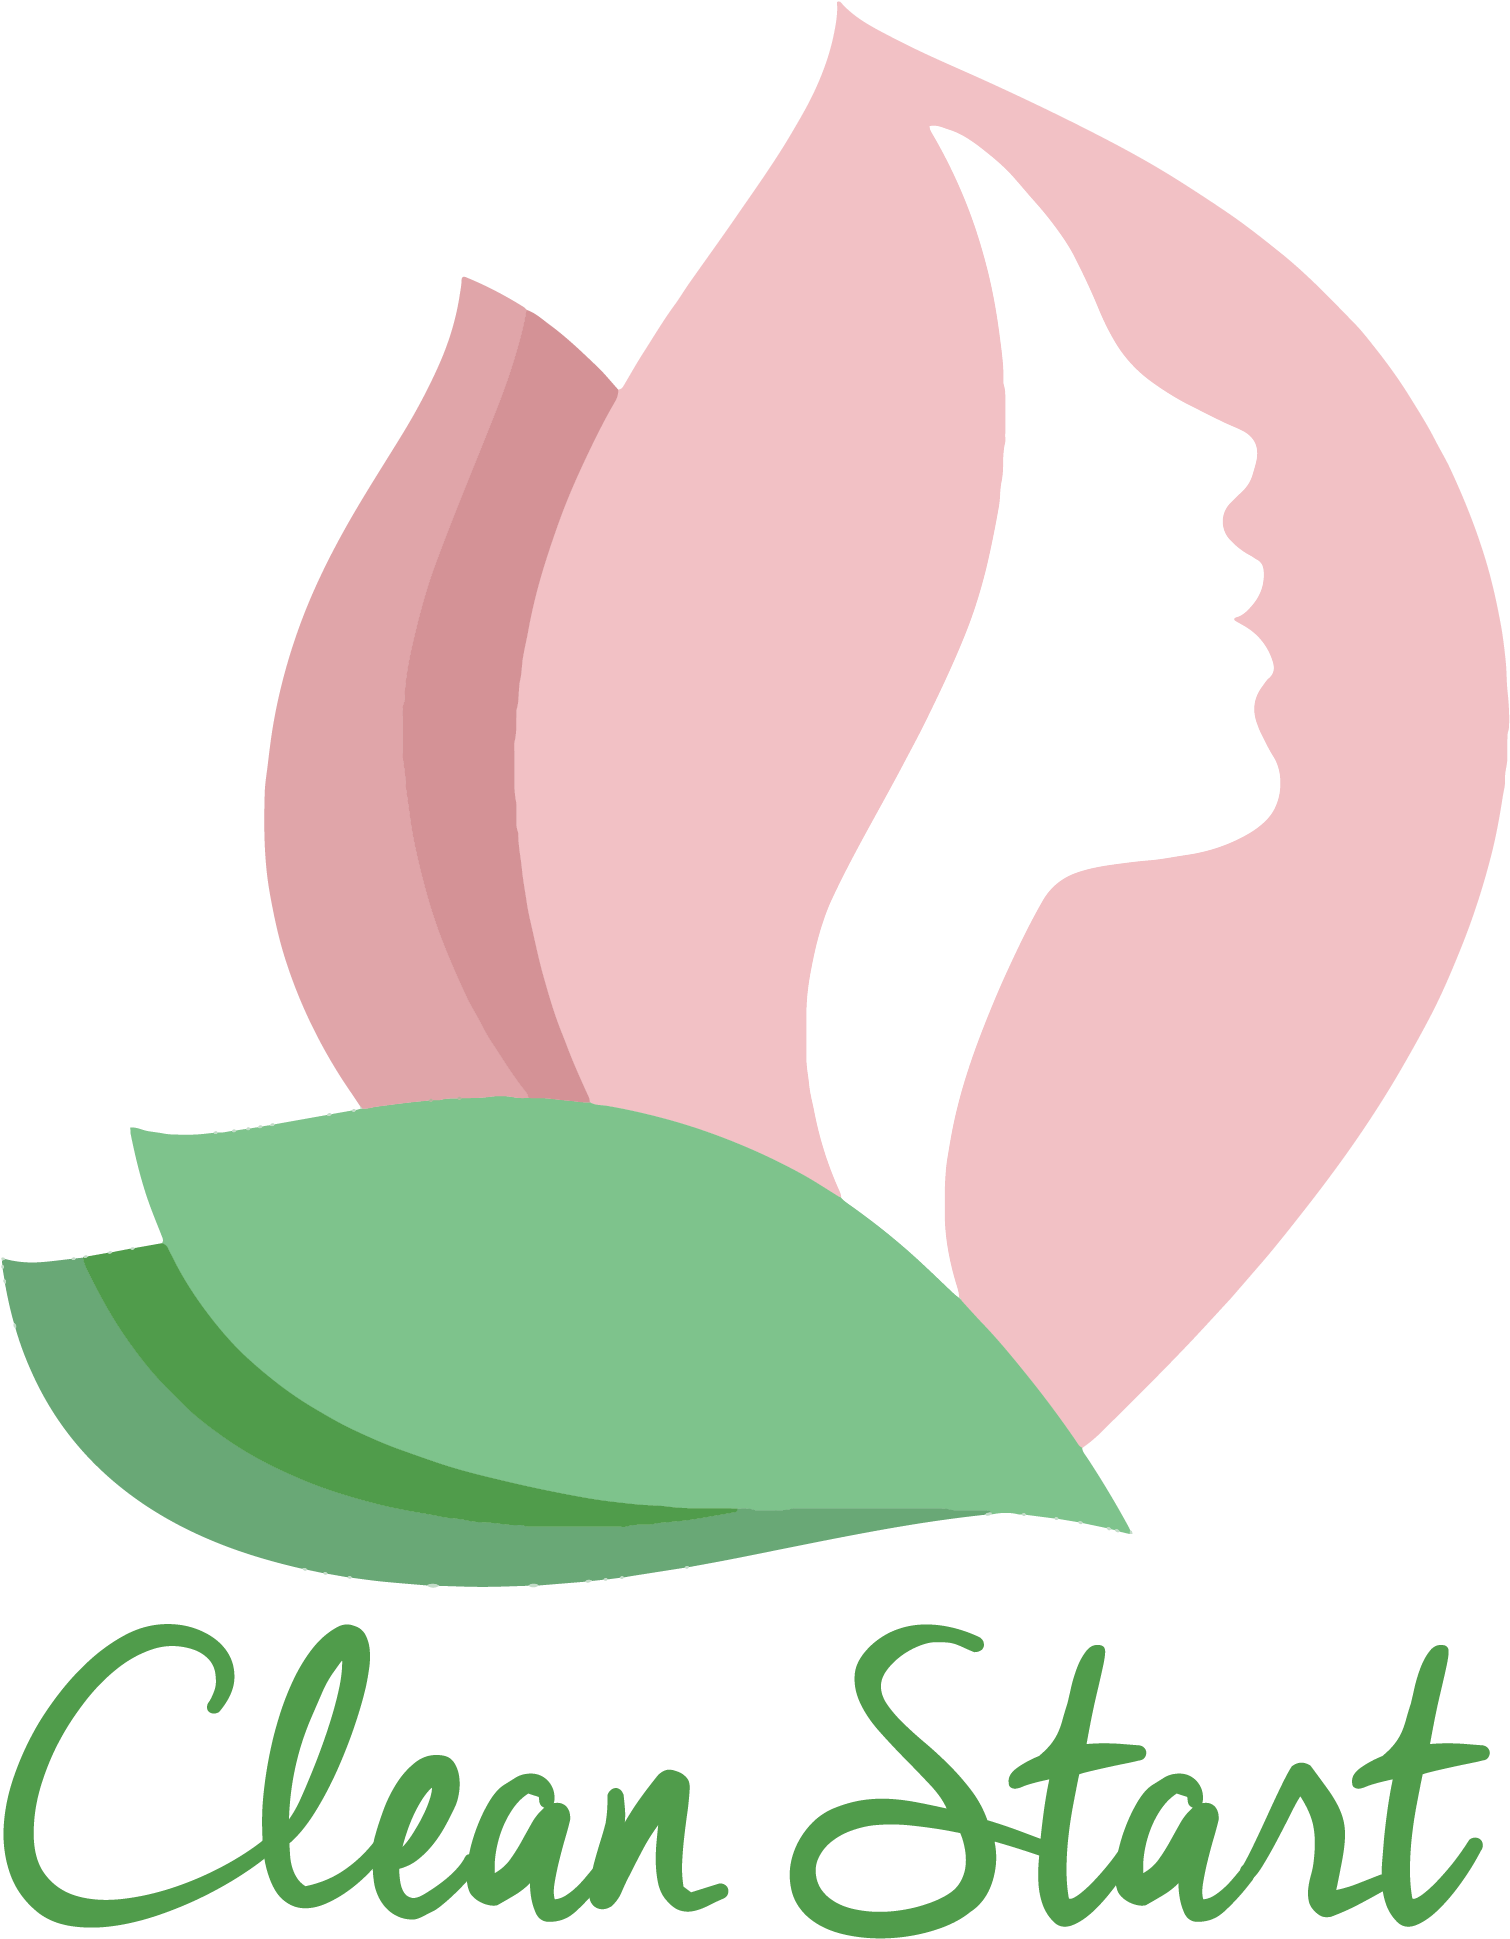 A Logo Of A Woman's Face